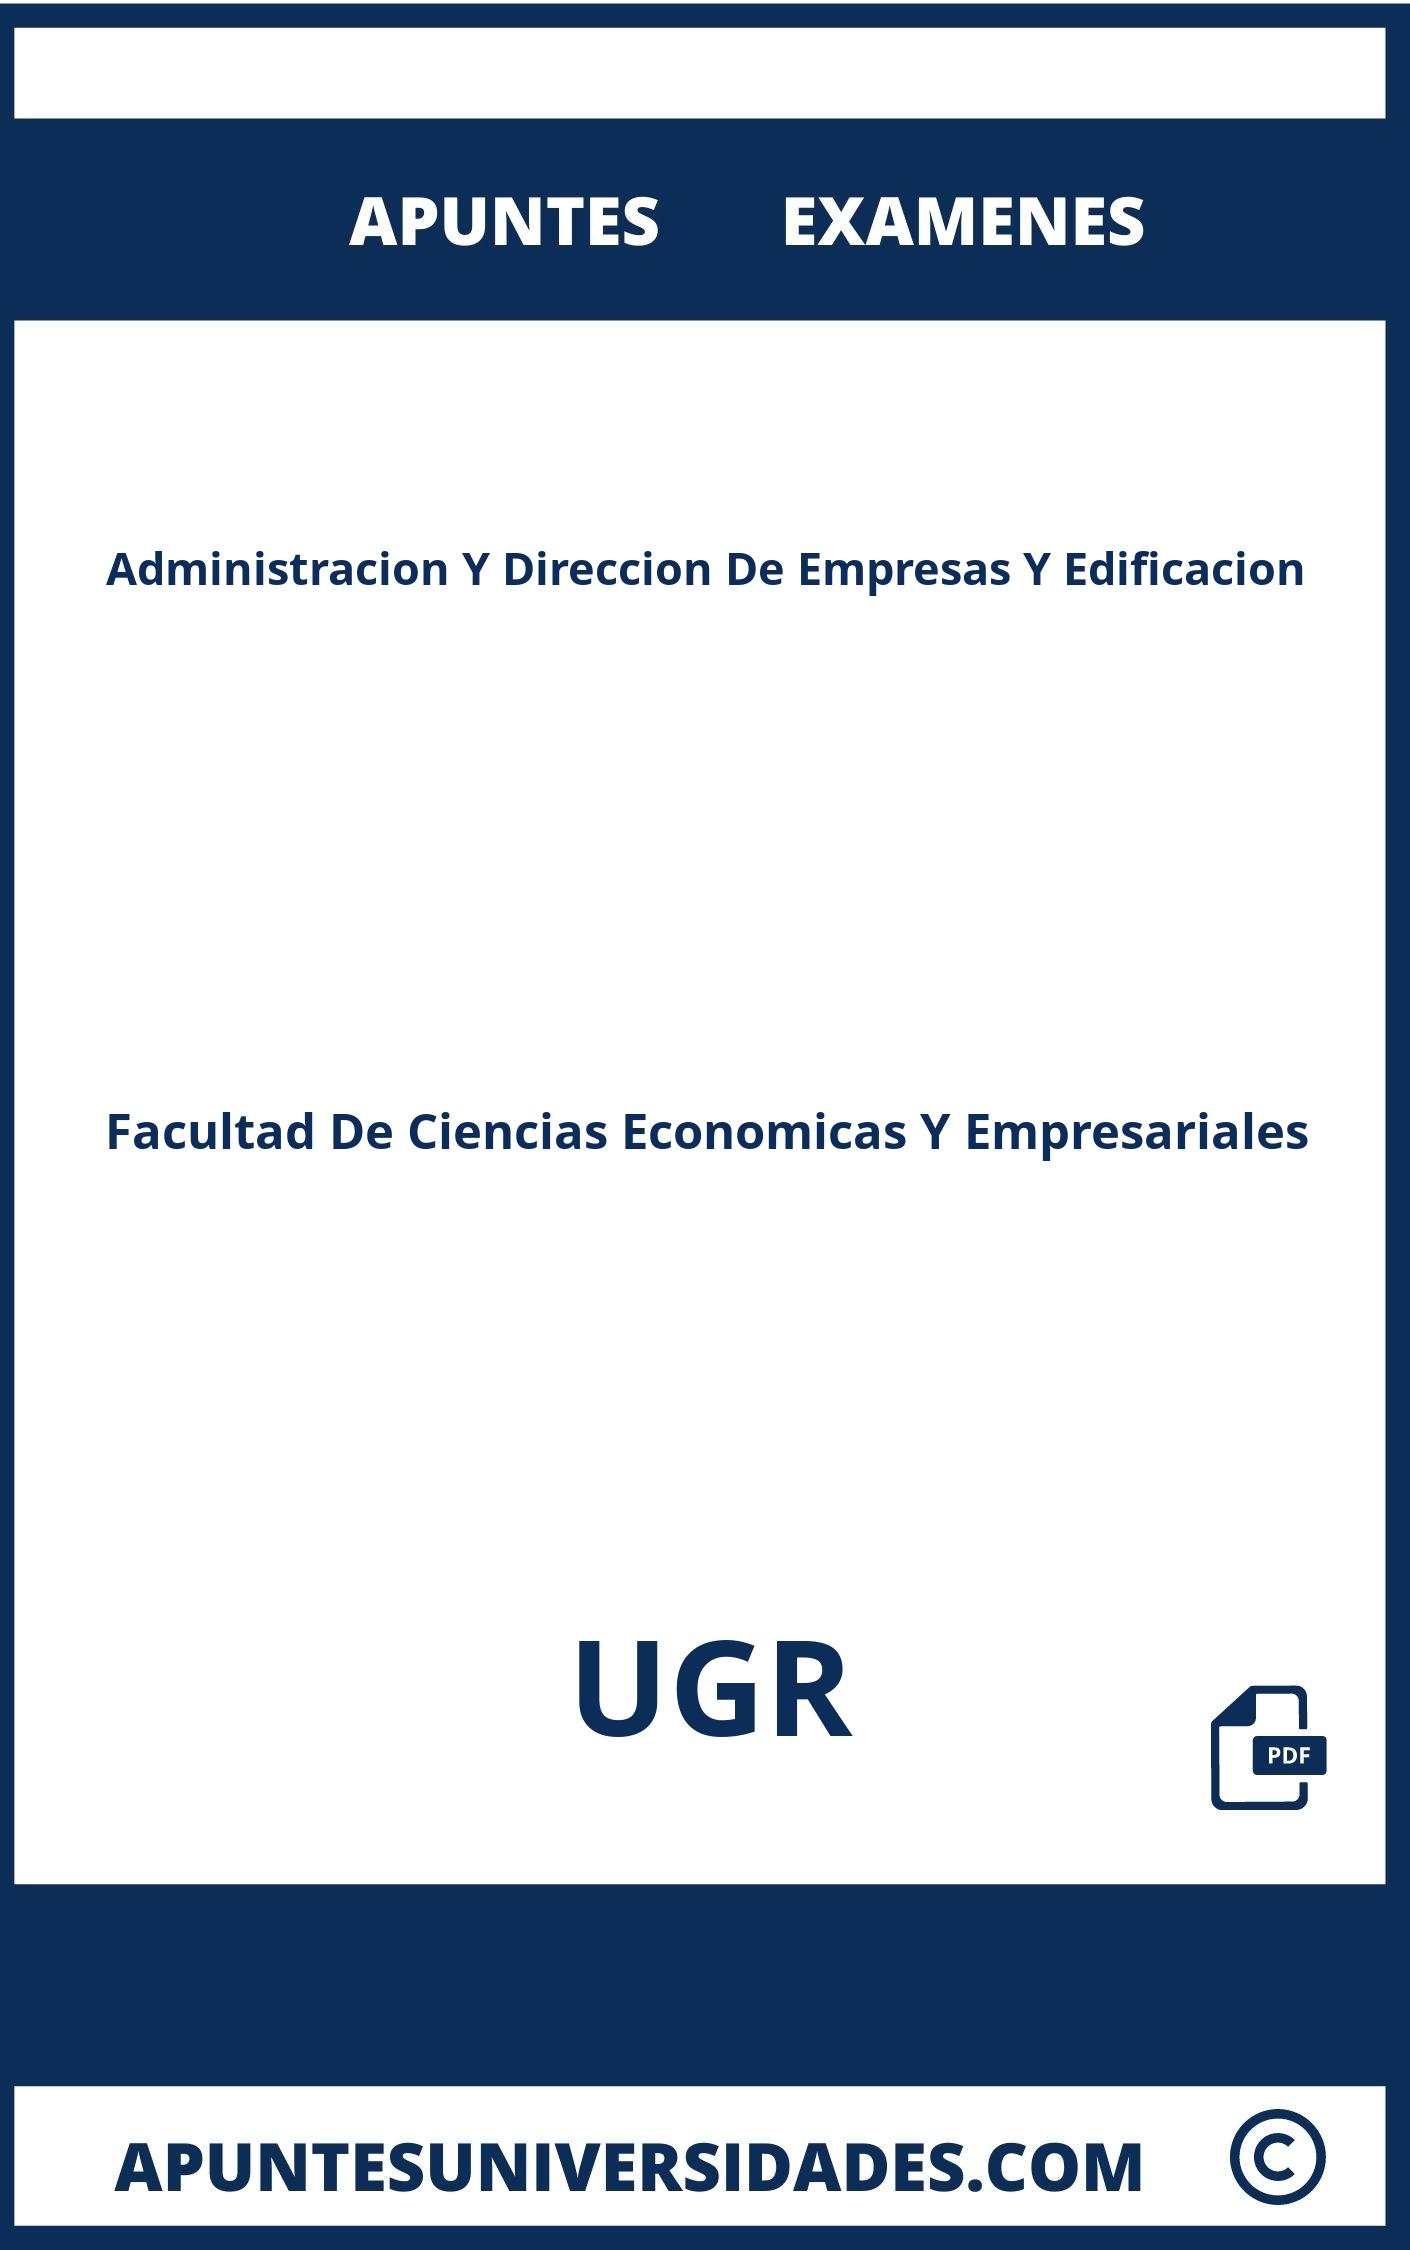 Apuntes Examenes Administracion Y Direccion De Empresas Y Edificacion UGR